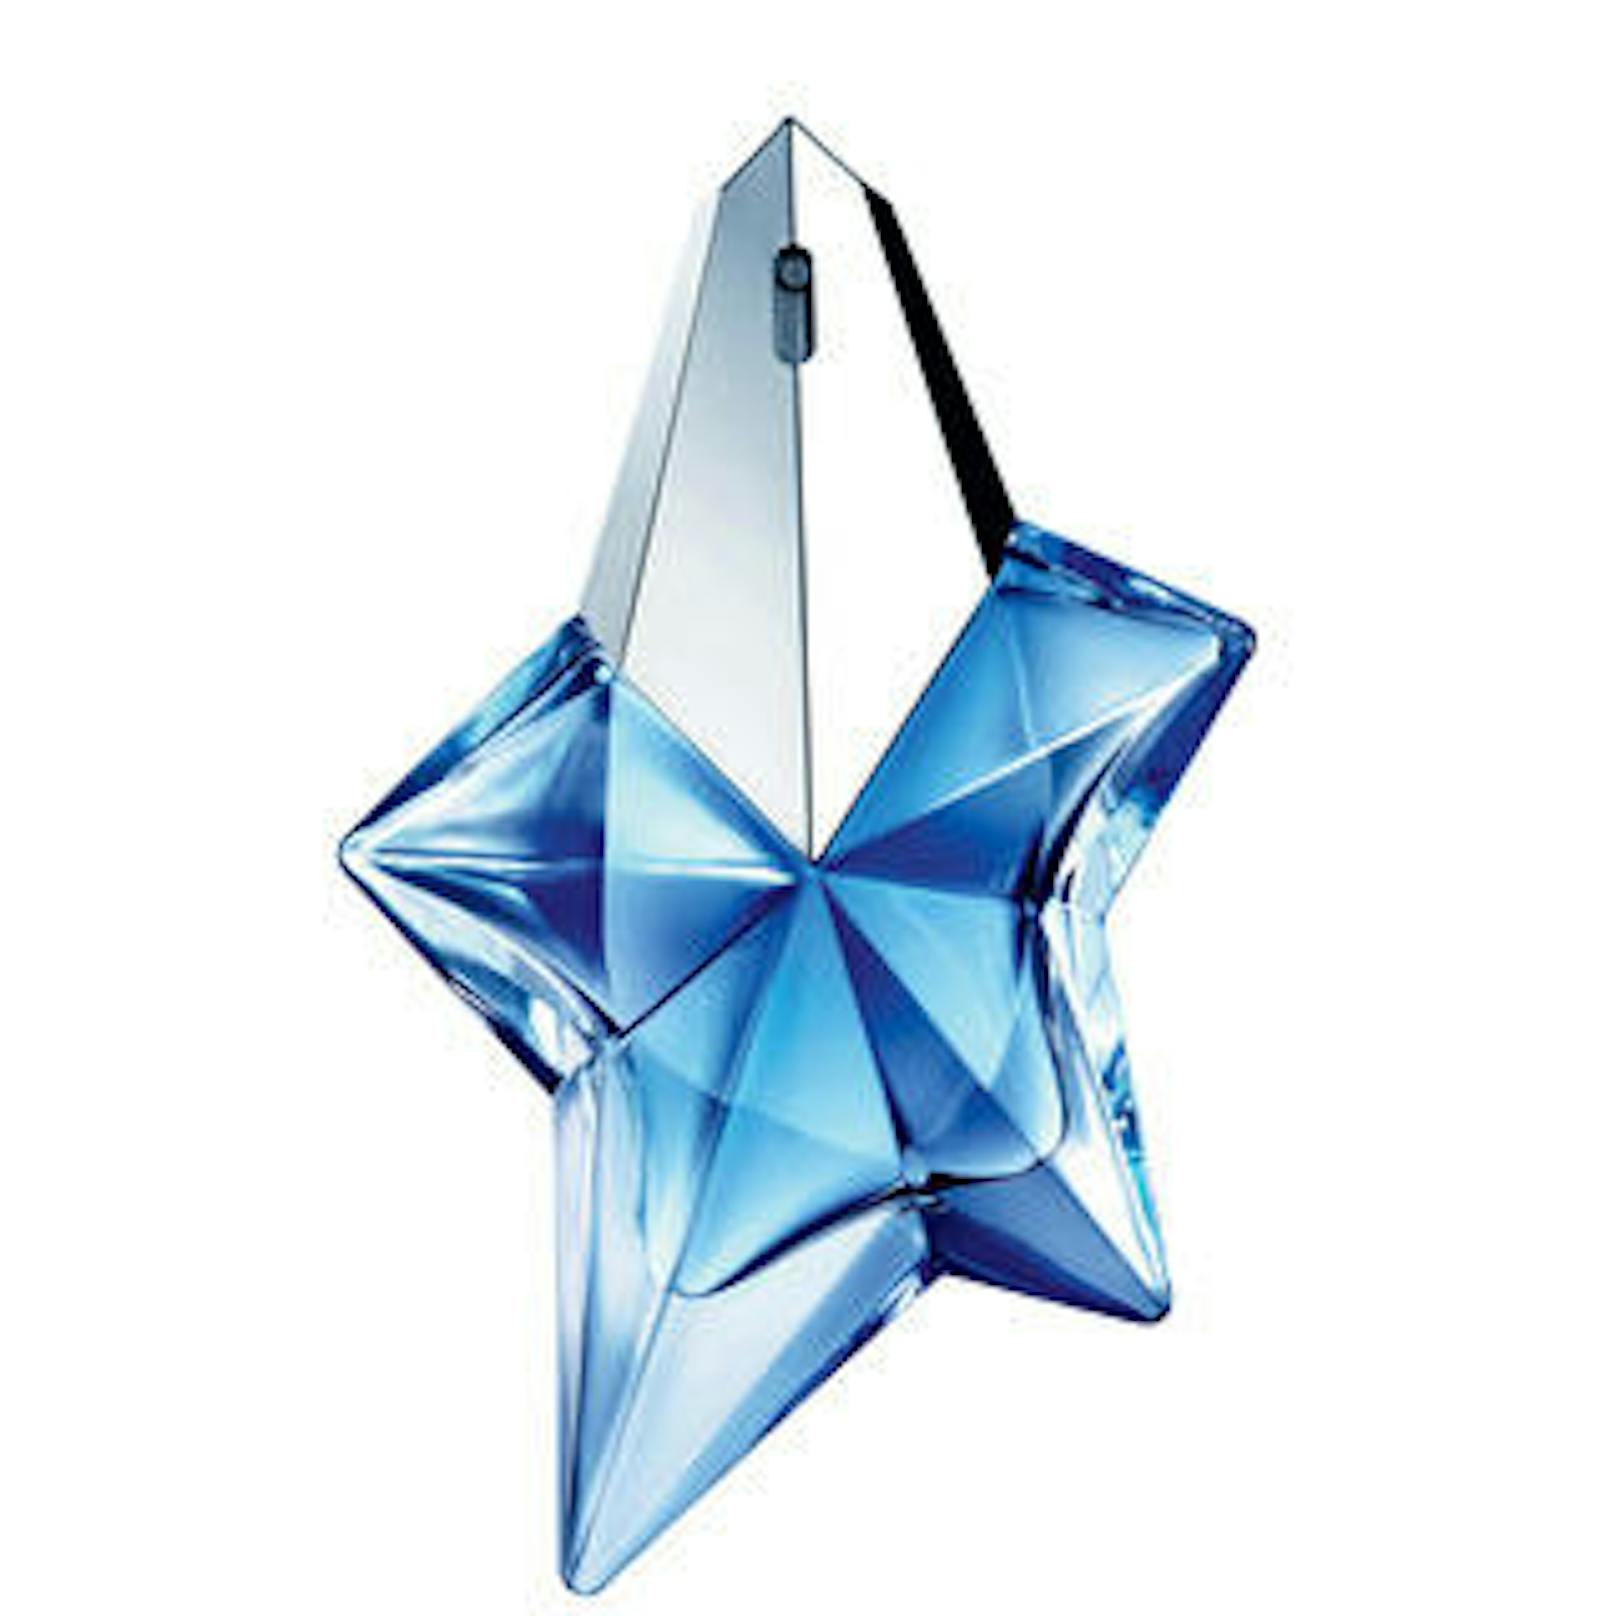 Thierry Mugler hat mit seinem "Angel" in Form eines Sterns einen Klassiker der Parfümgeschichte geschaffen und wurde so einer großen Öffentlichkeit erst bekannt. (Foto: Mugler USA) 